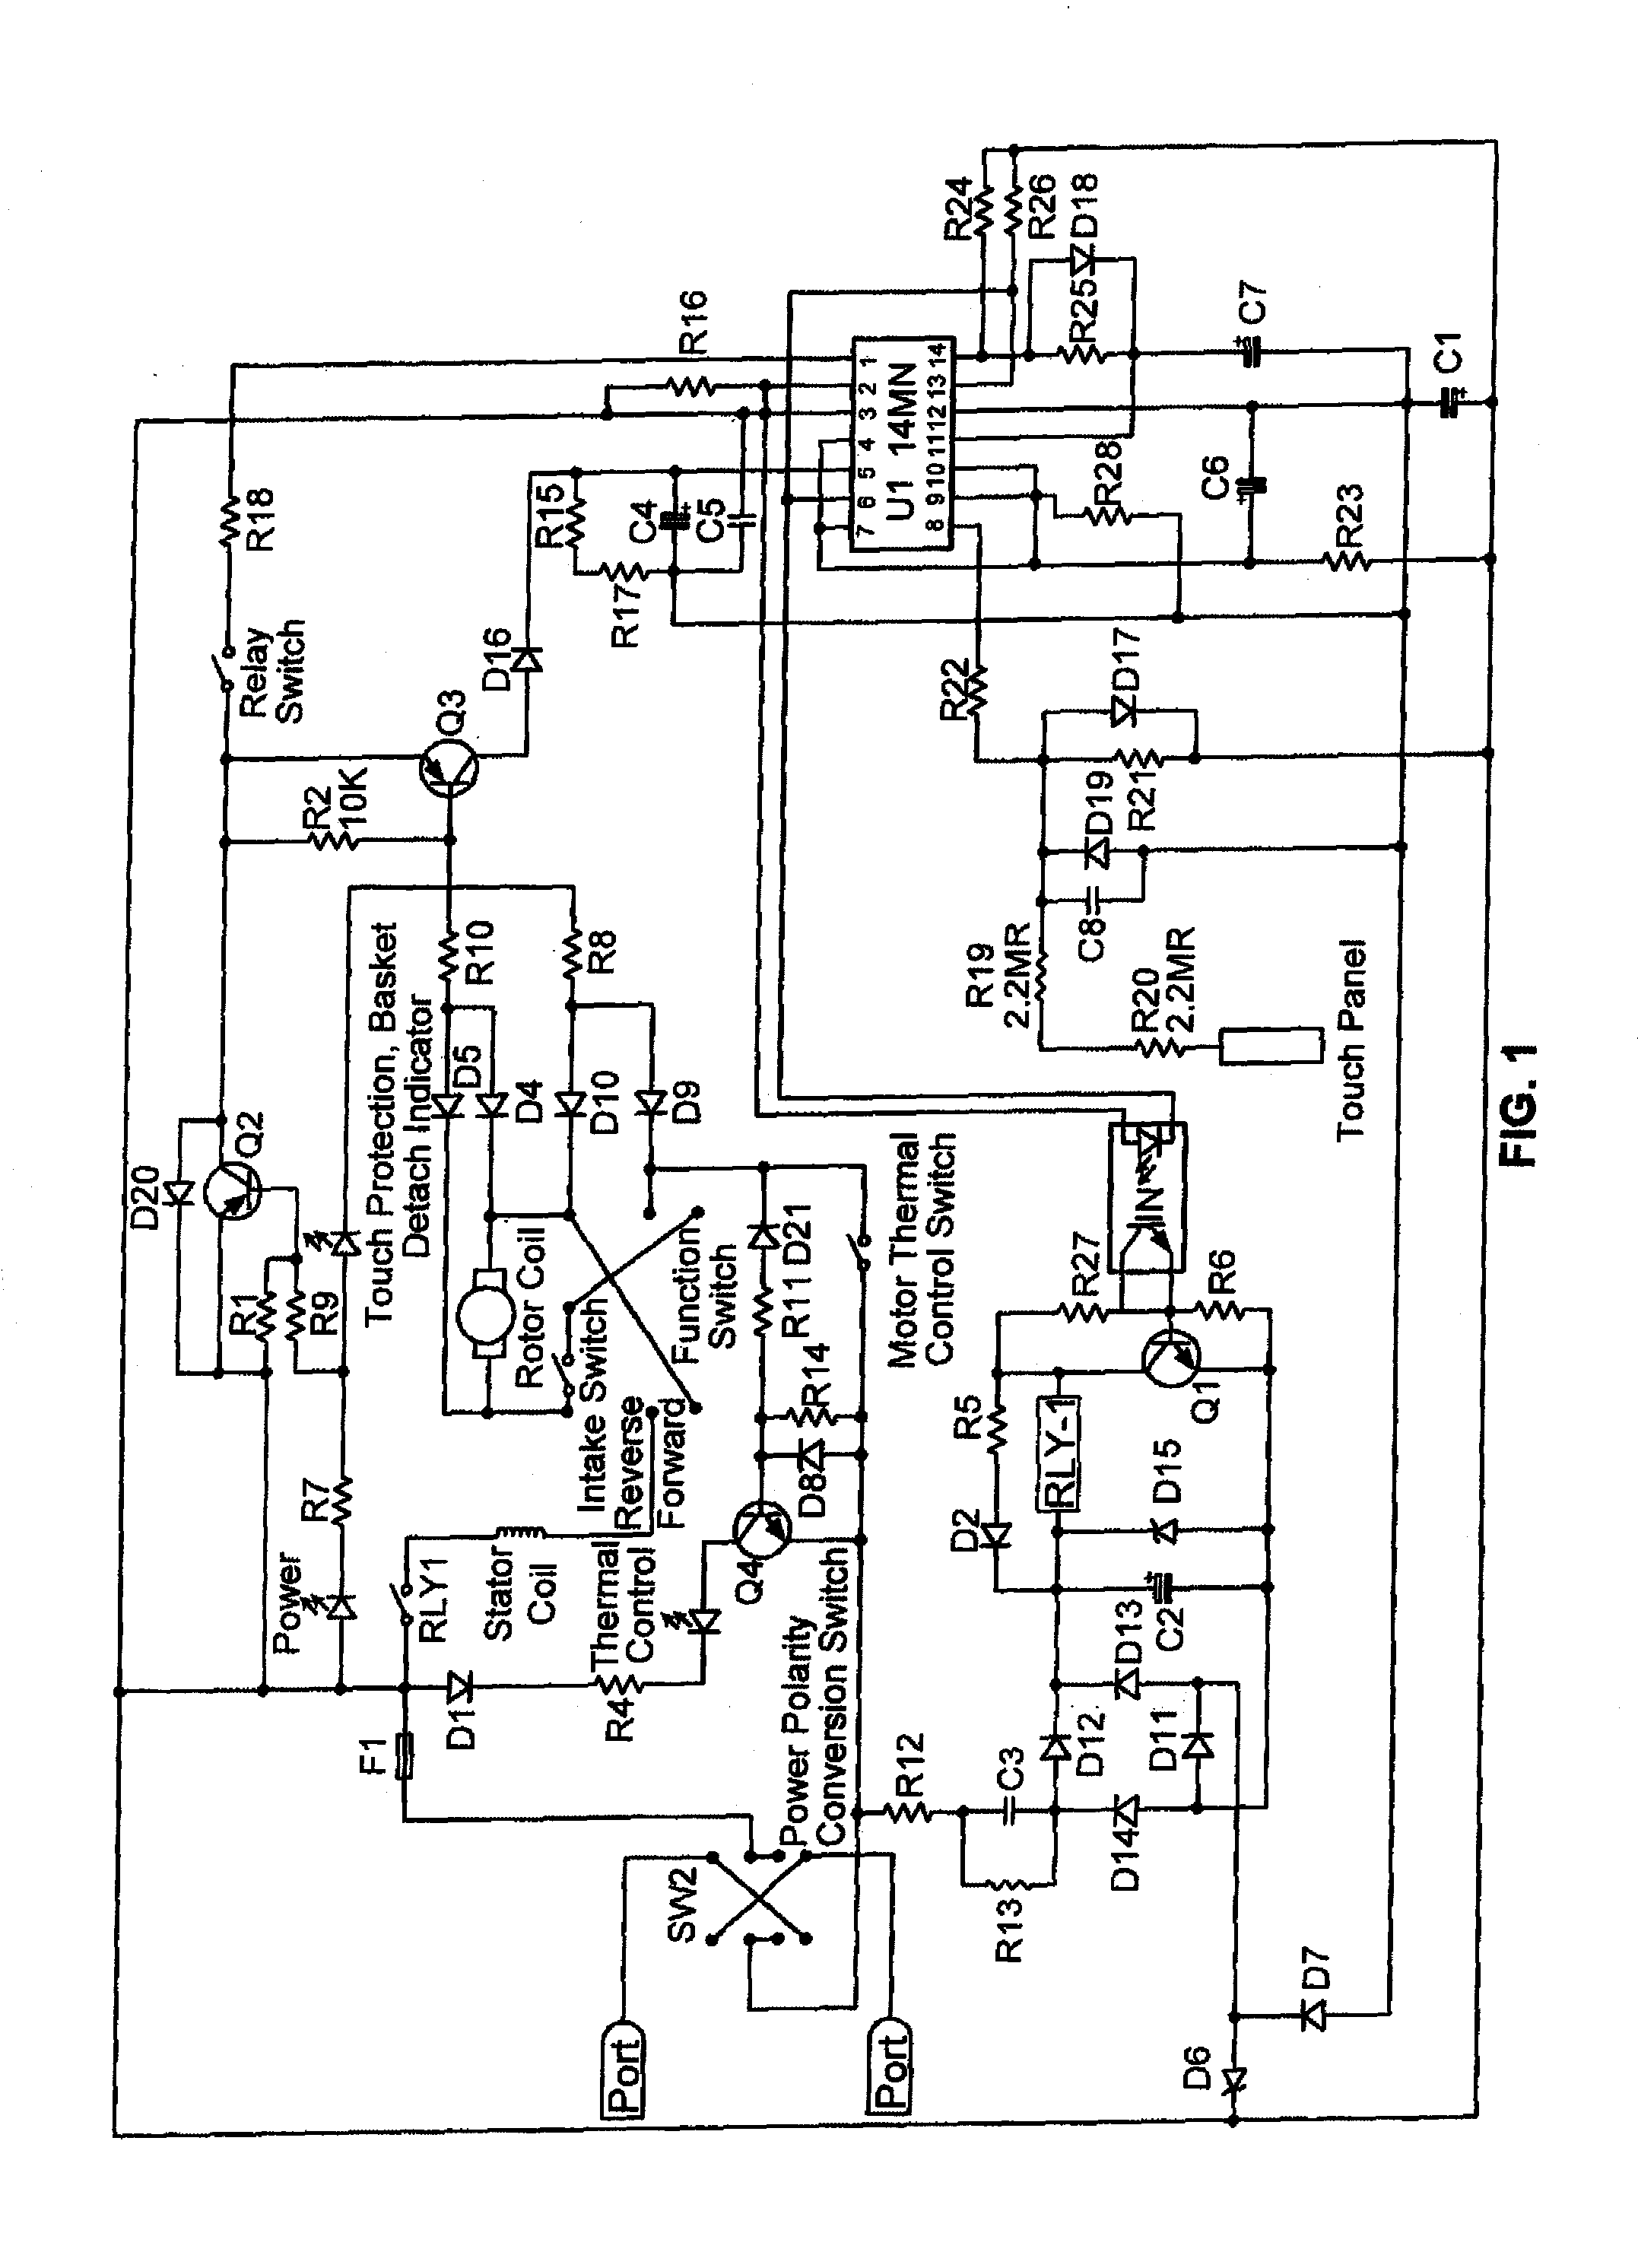 fellowes w10c shredder wiring diagram